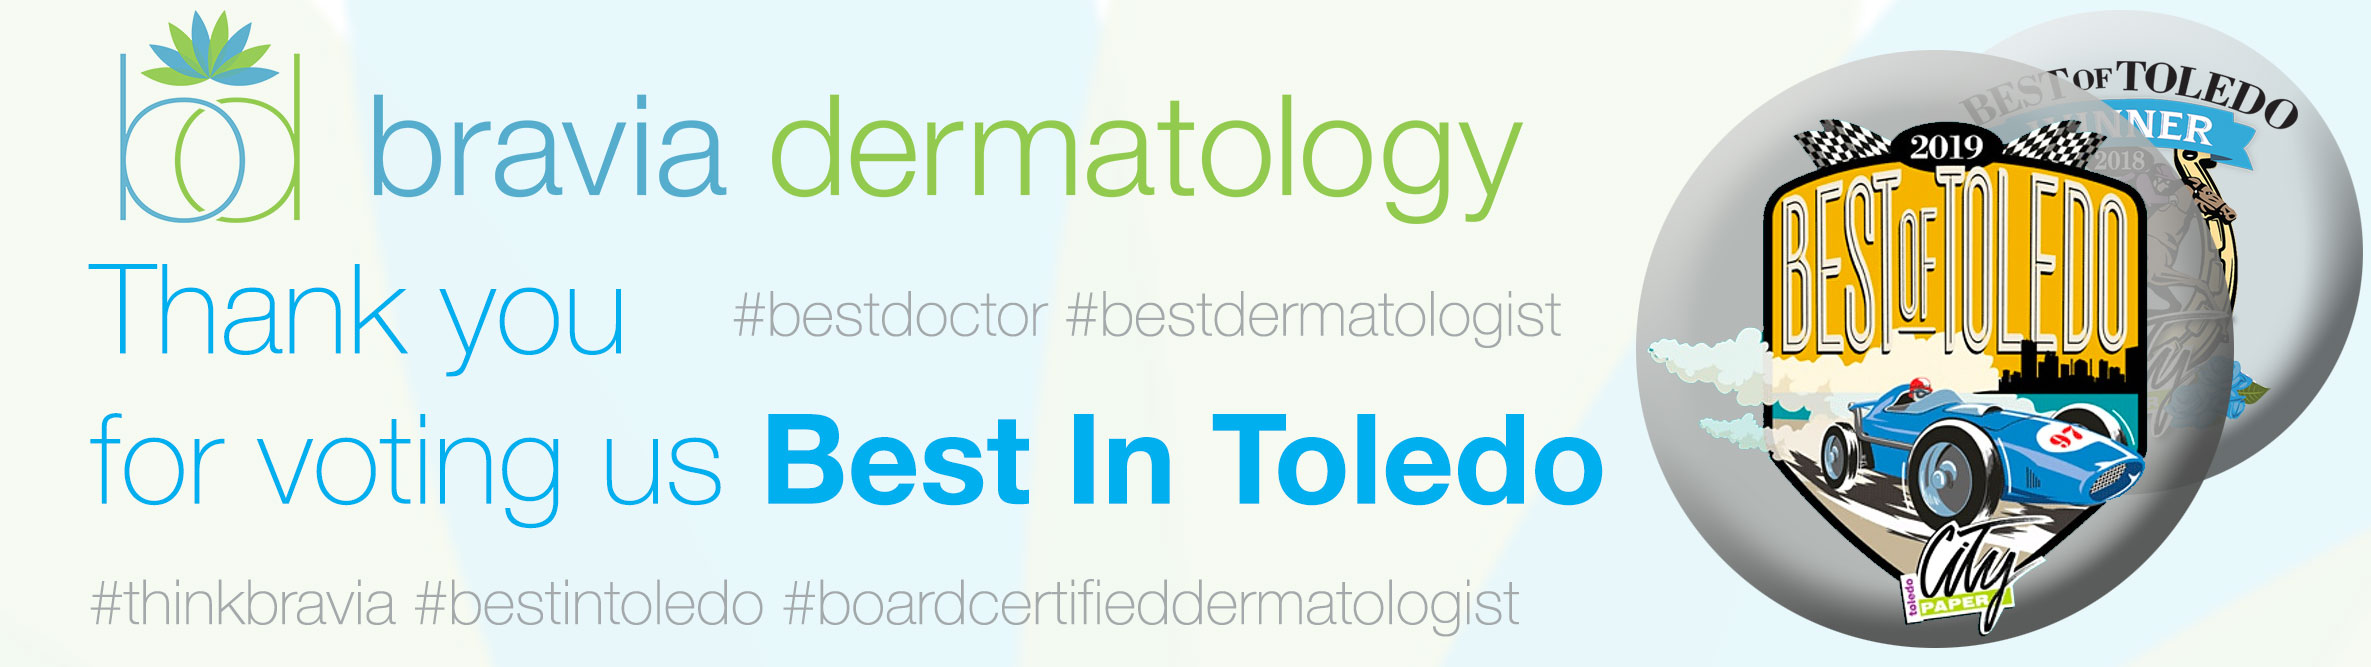 Bravia Dermatology voted Best Dermatologist in Toledo, Dr. Molenda of Bravia Dermatology voted Best Doctor in Toledo.